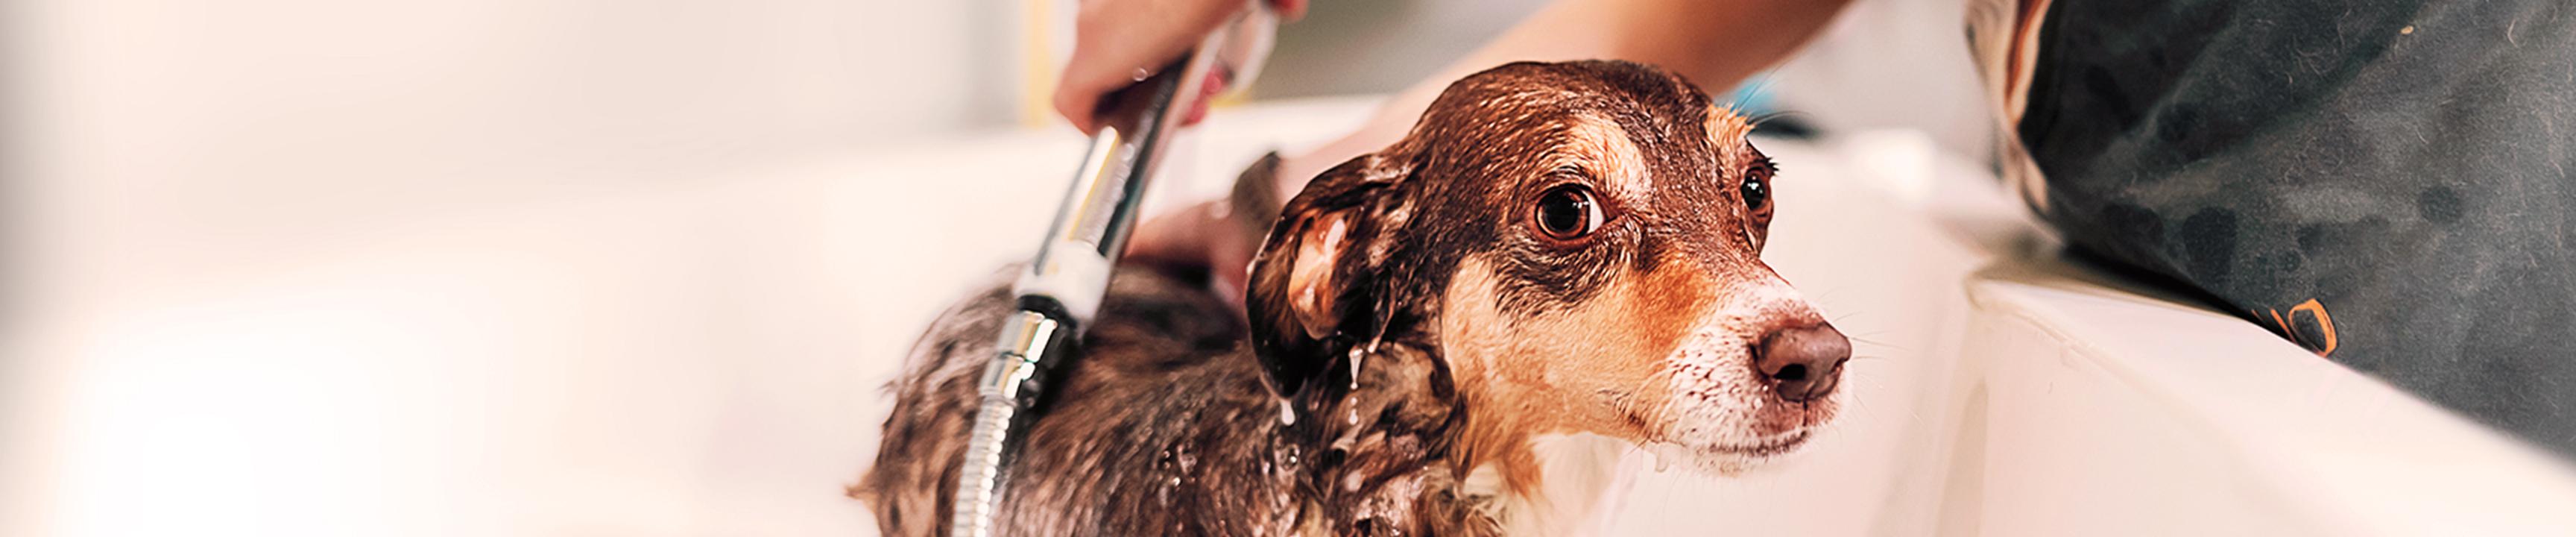 الكلب يستحم باستخدام فوهة دش موفرة للمياه